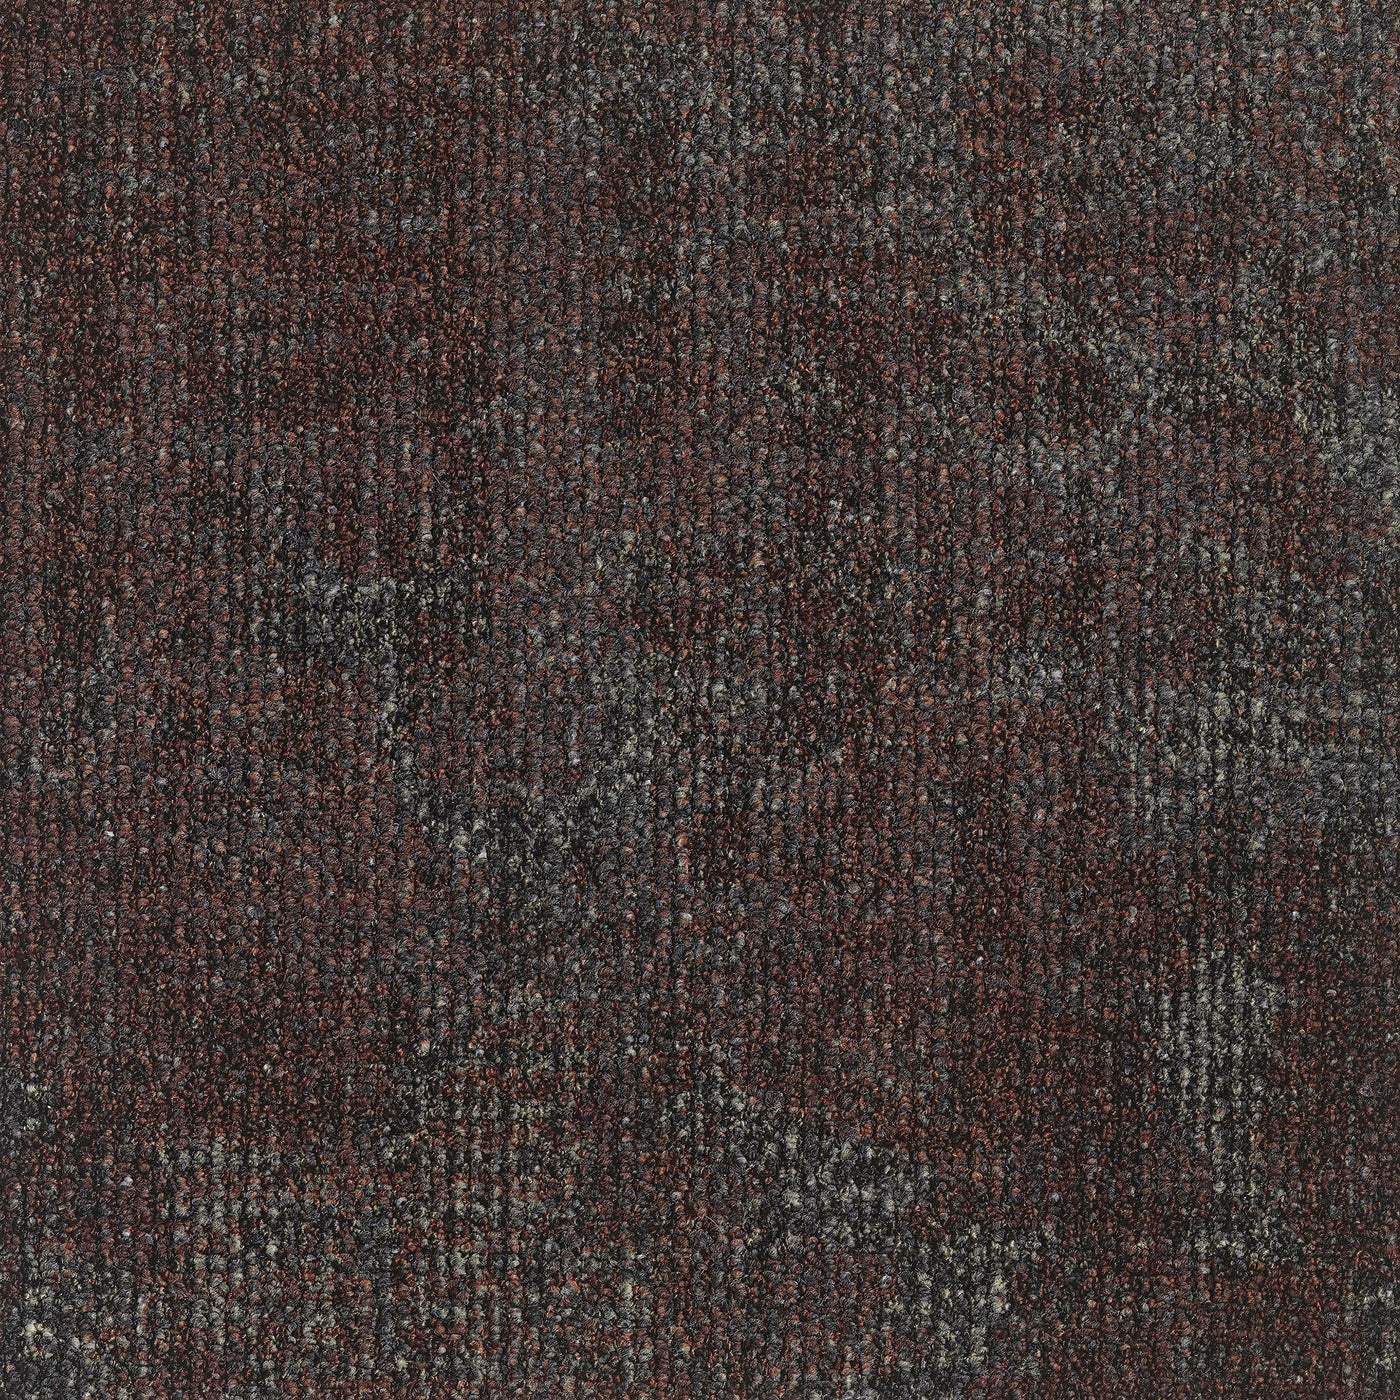 Transition Leaf Carpet Tile/Broadloom